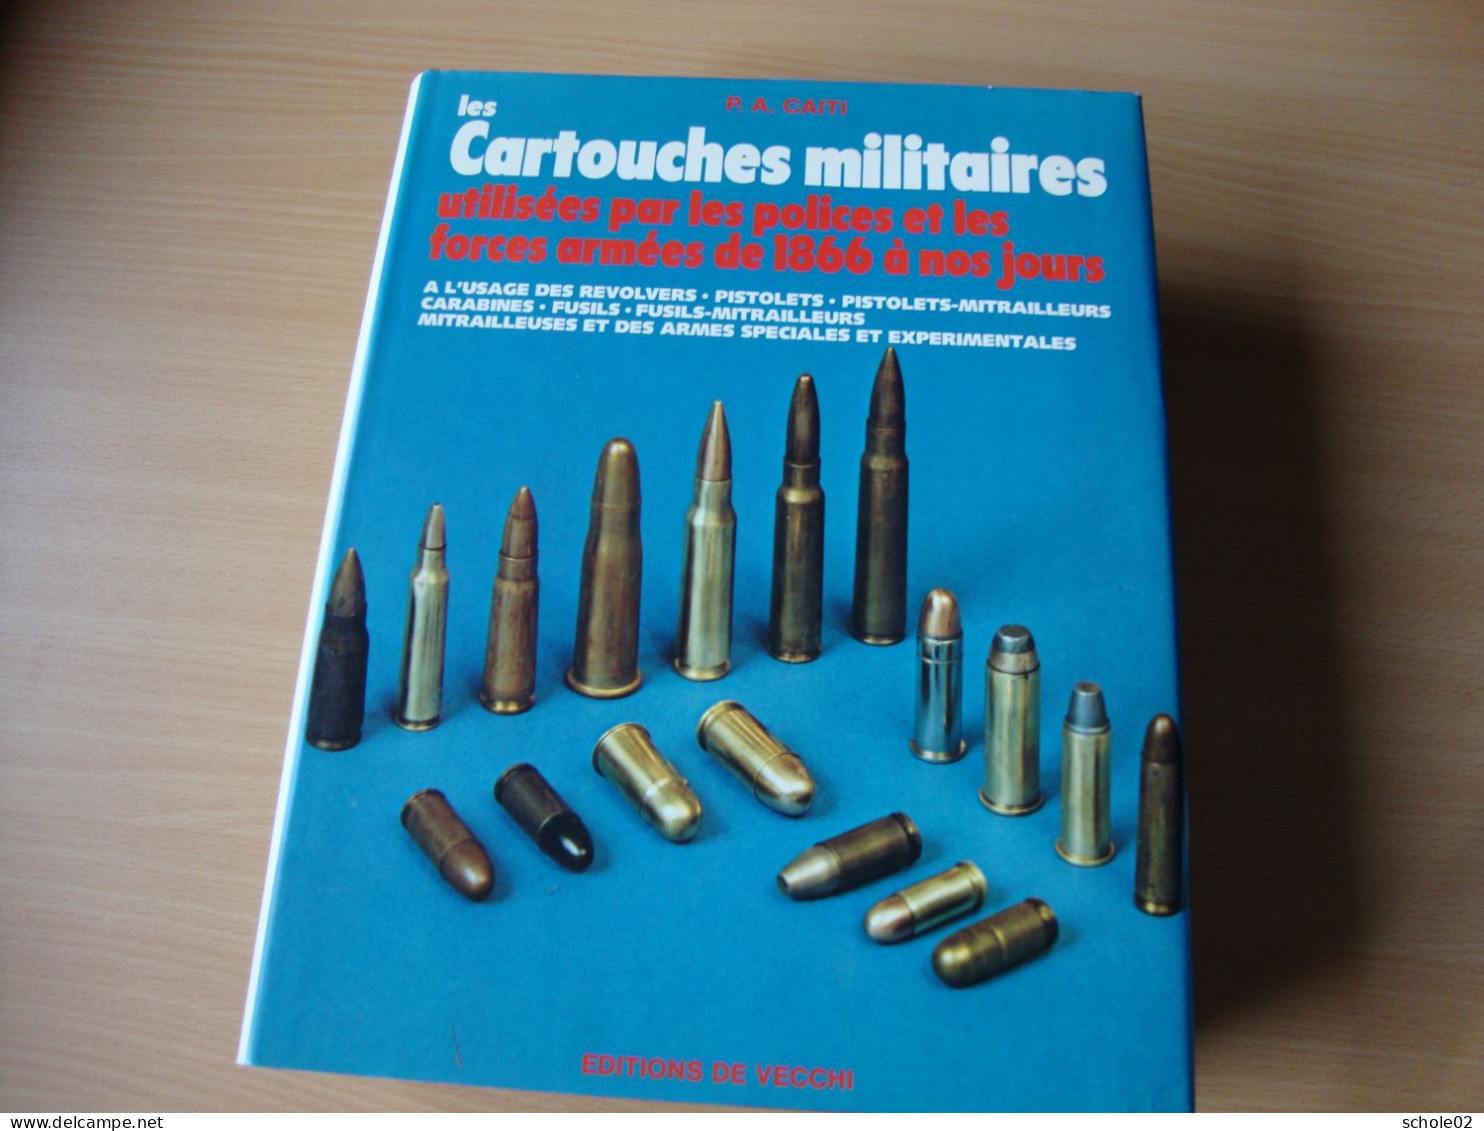 Les Cartouches Militaires (P.A. Caiti) - Decotatieve Wapens